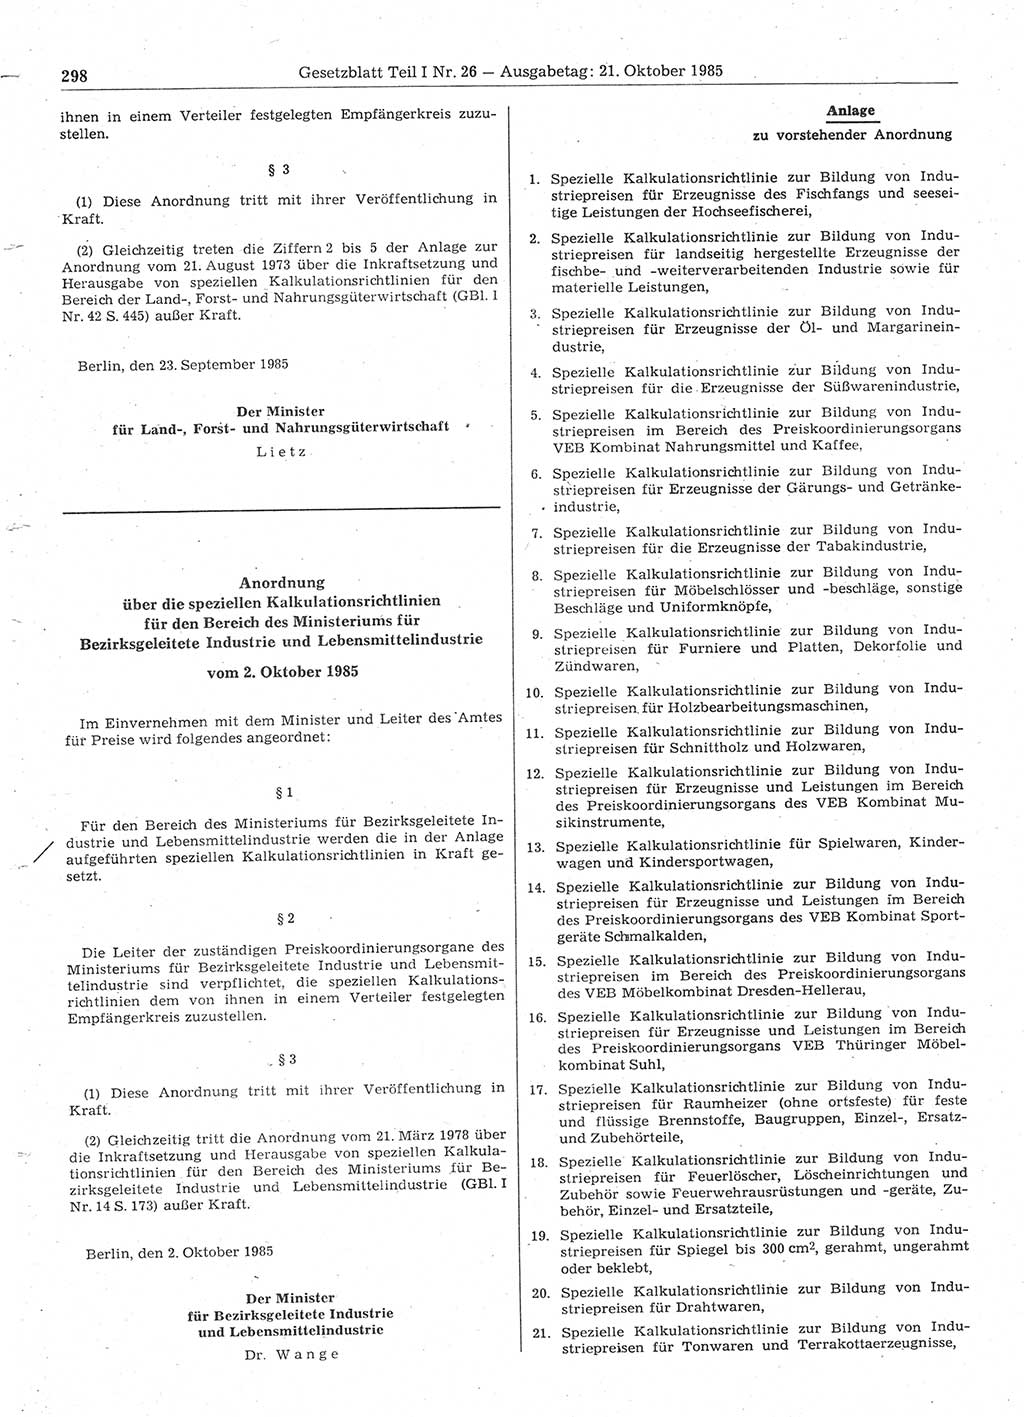 Gesetzblatt (GBl.) der Deutschen Demokratischen Republik (DDR) Teil Ⅰ 1985, Seite 298 (GBl. DDR Ⅰ 1985, S. 298)